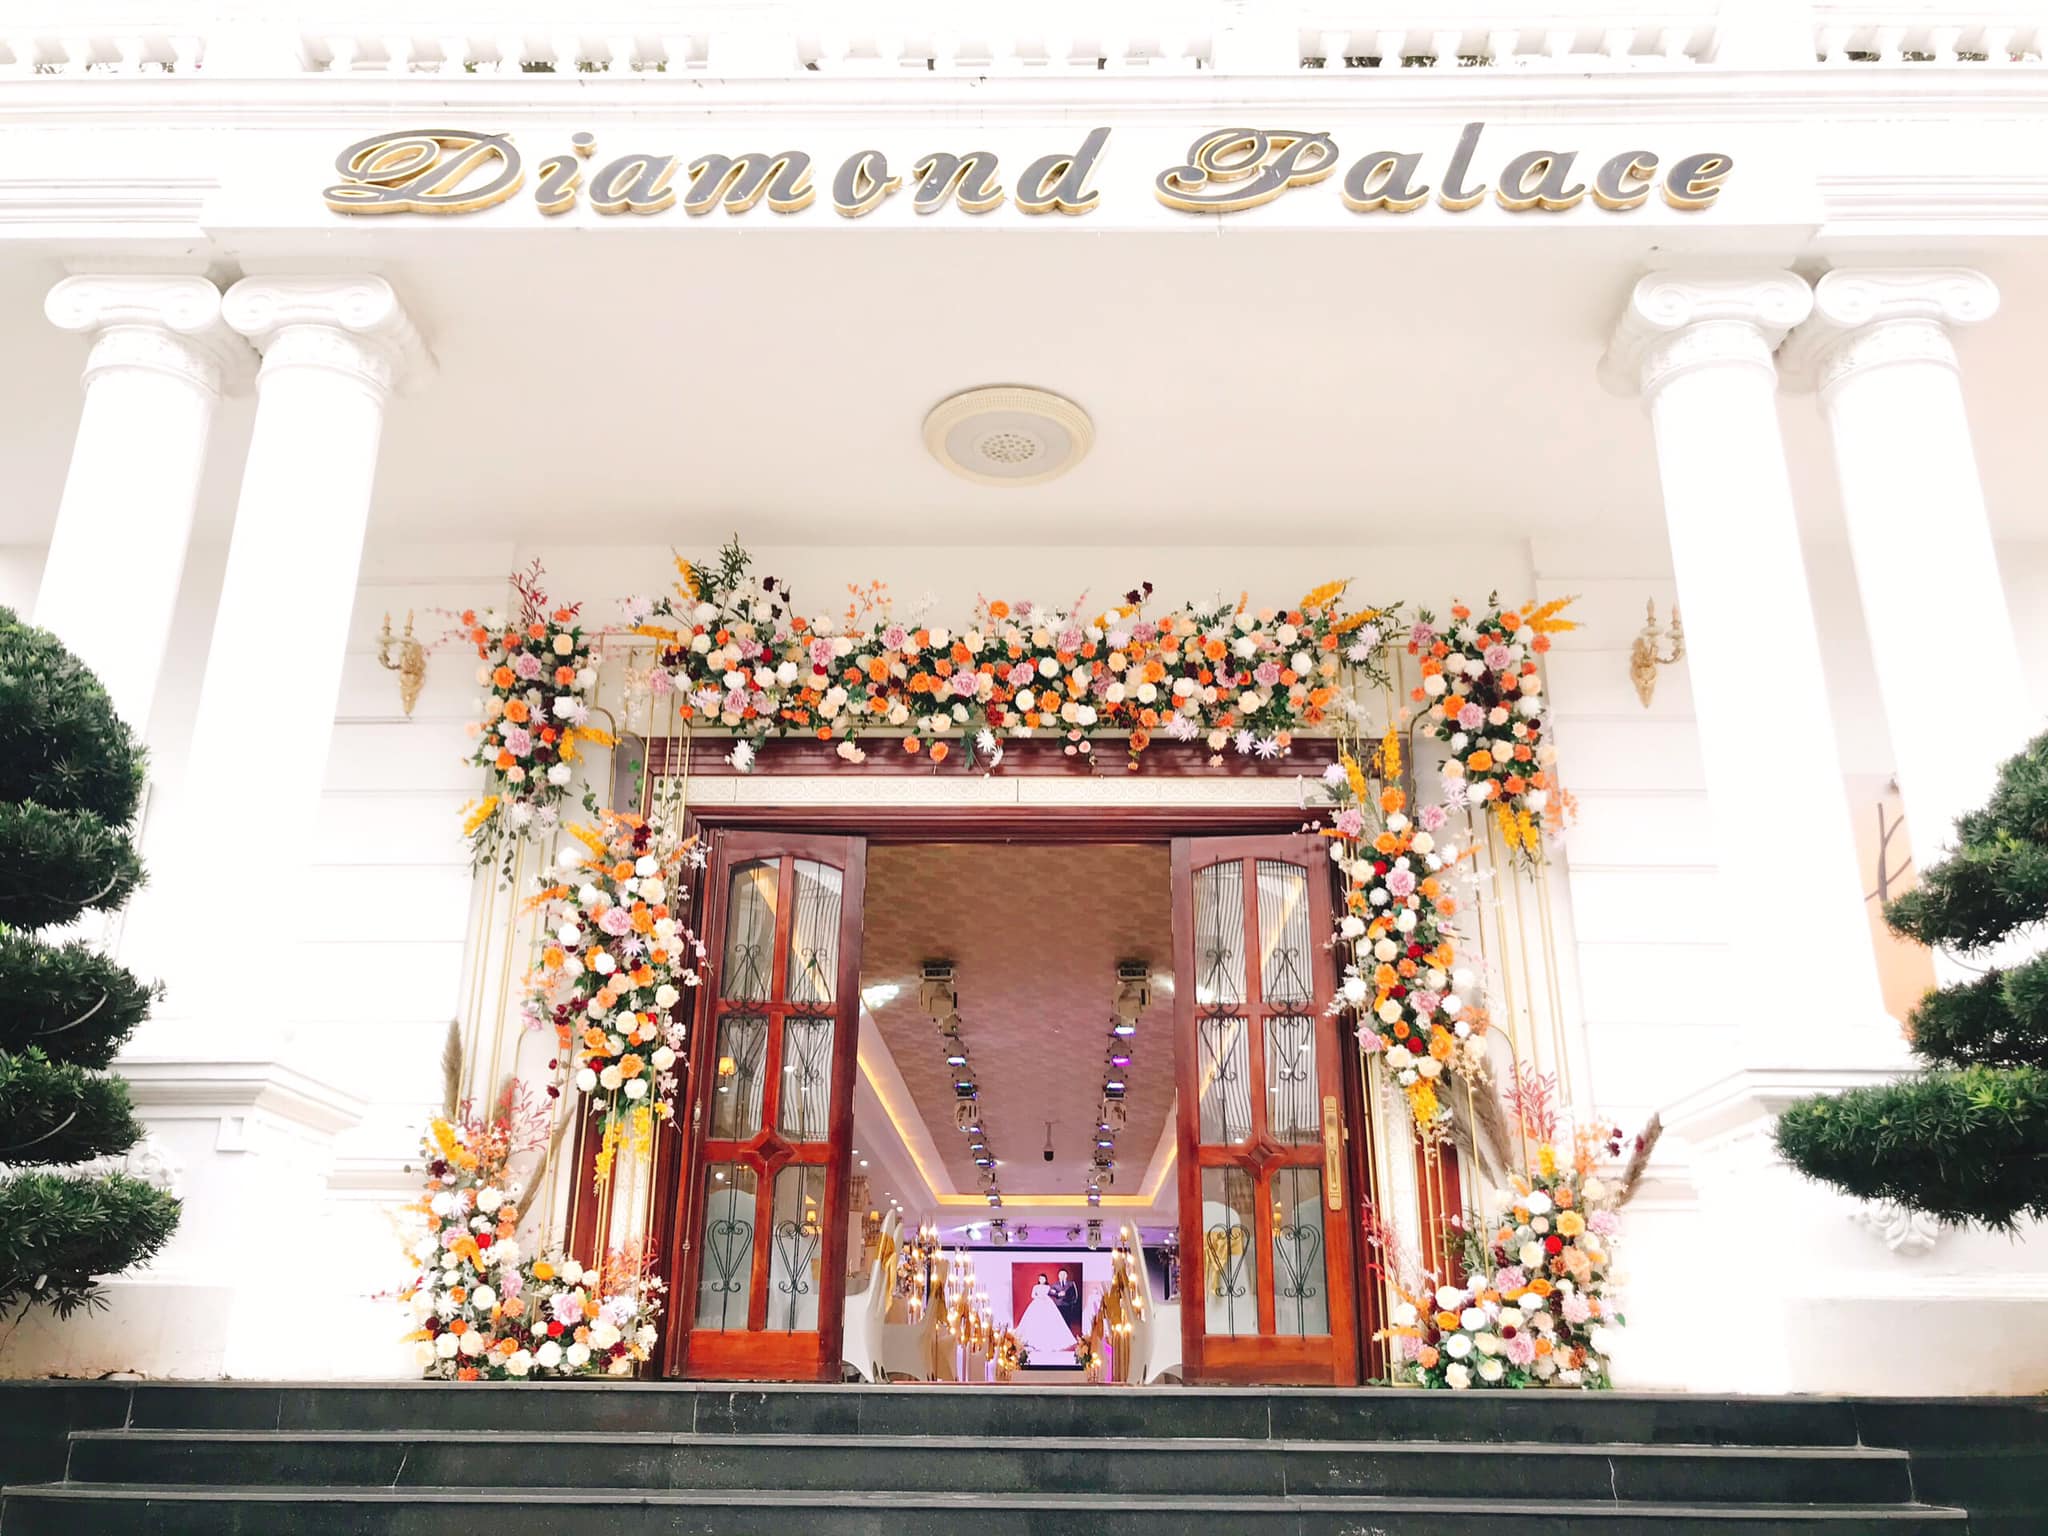 Trung tâm hội nghị tiệc cưới Diamond Palace - Grand Hotel